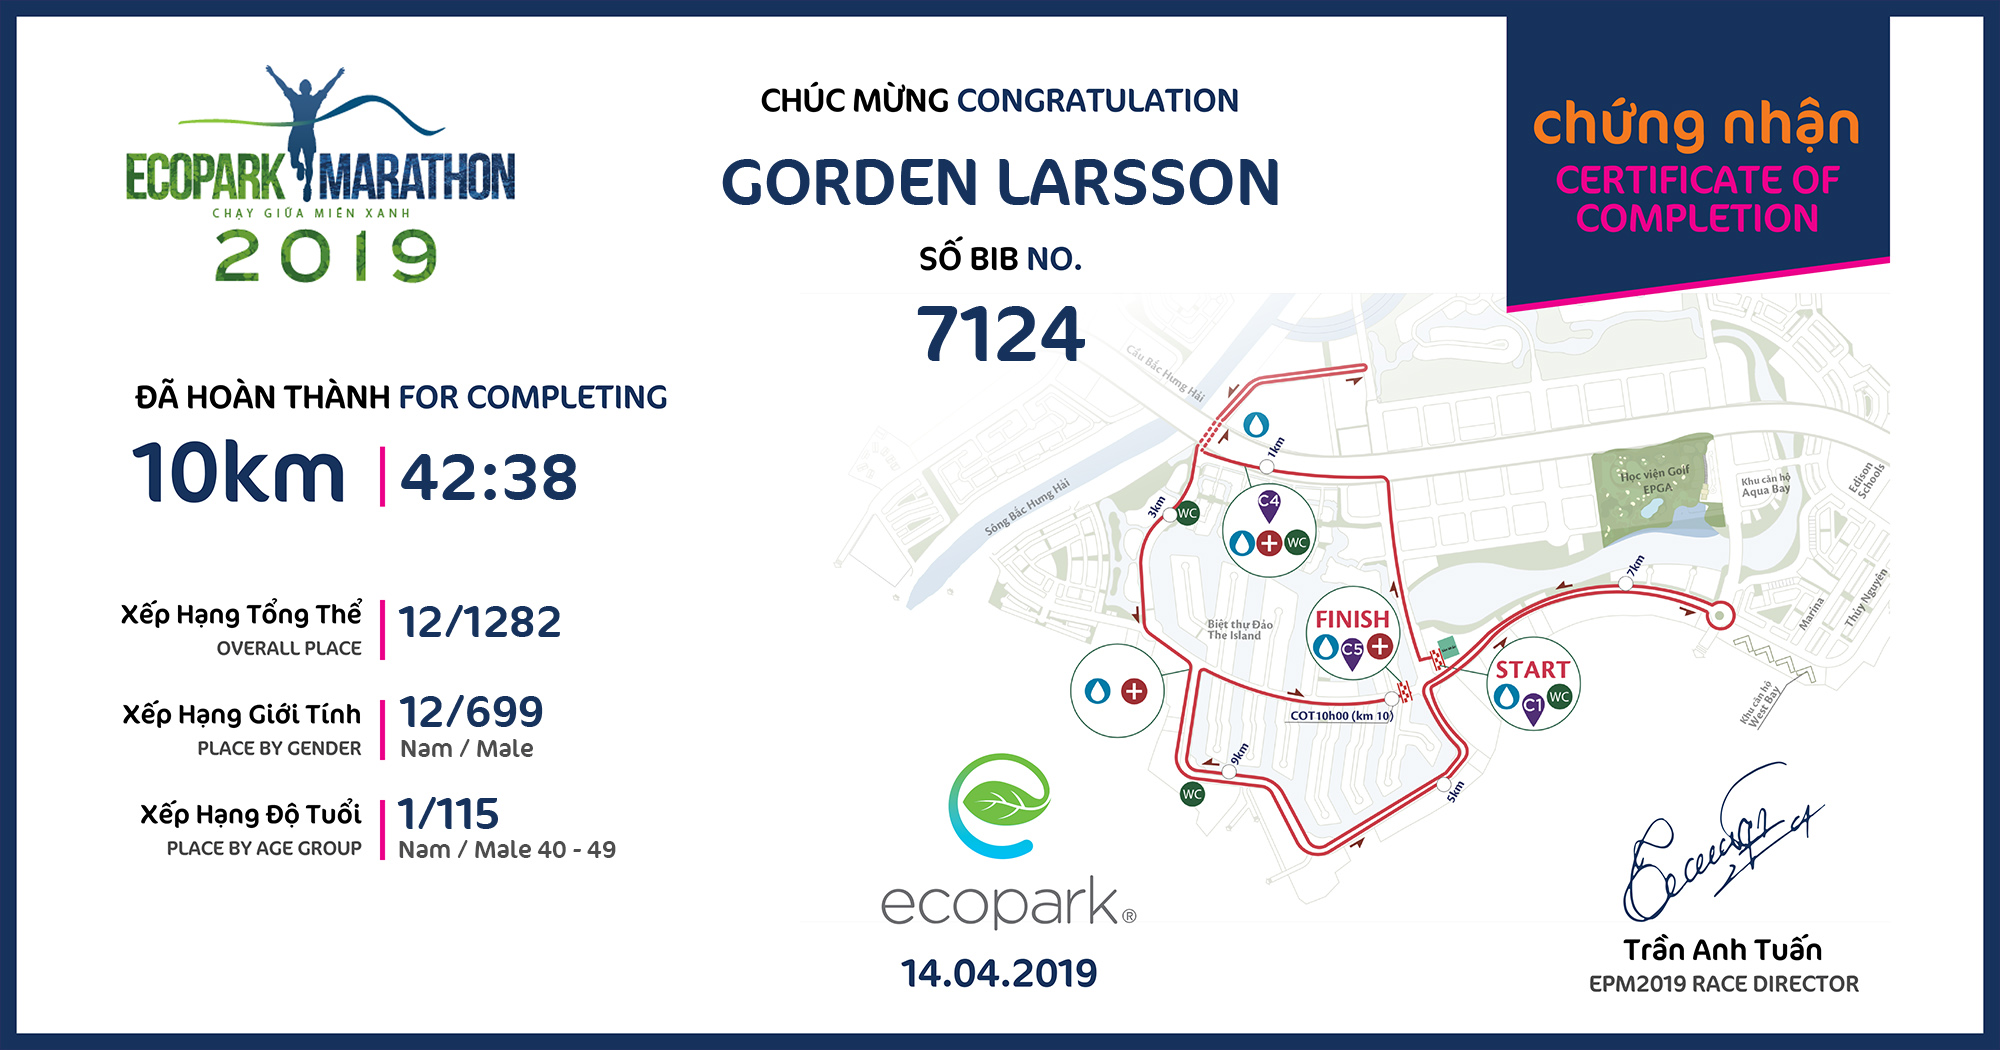 7124 - Gorden Larsson